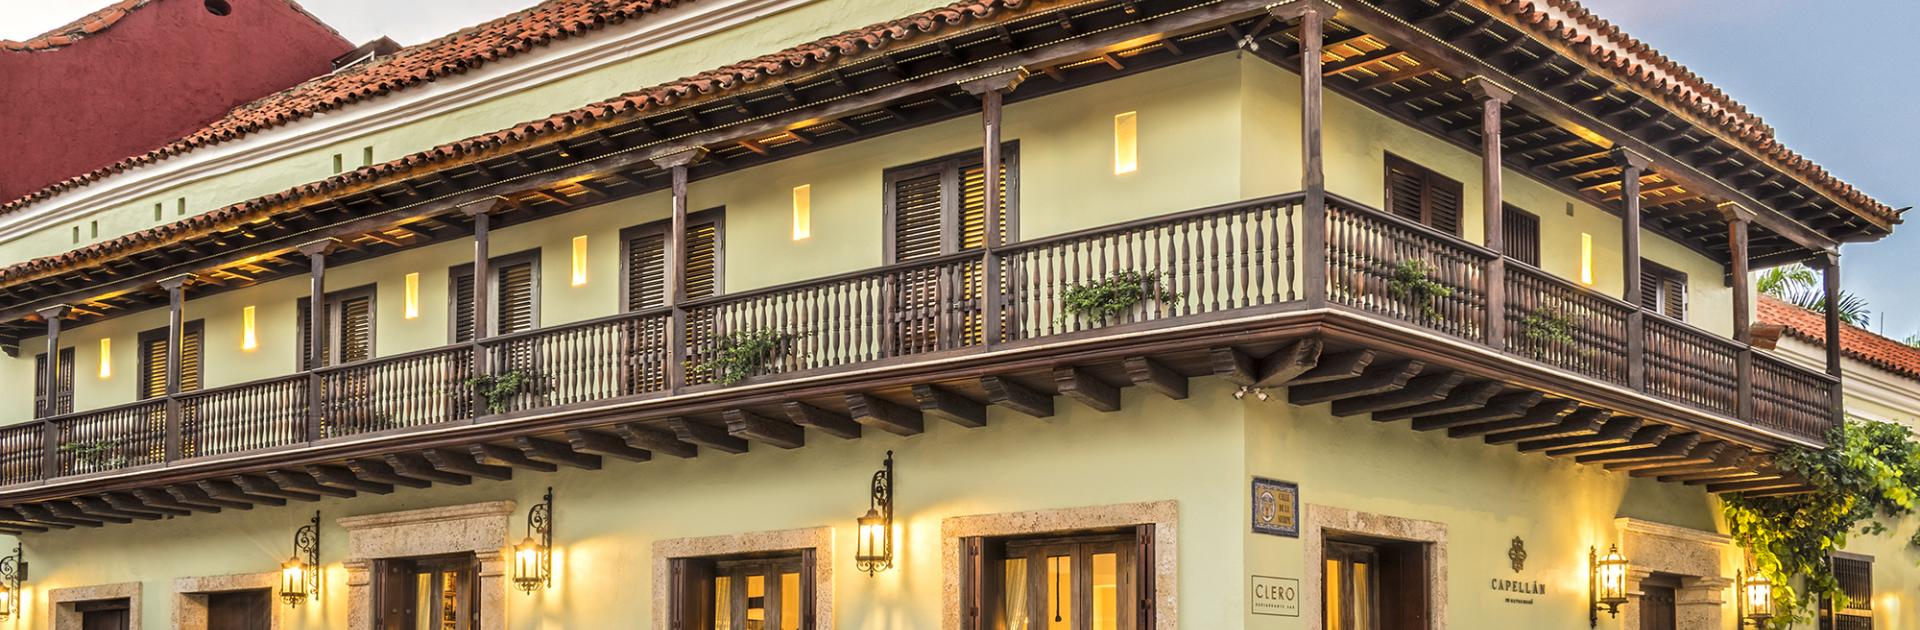 Restaurante Clero del Hotel Capellán, participante de Dónde Restaurant Week 2019 en en Cartagena de Indias